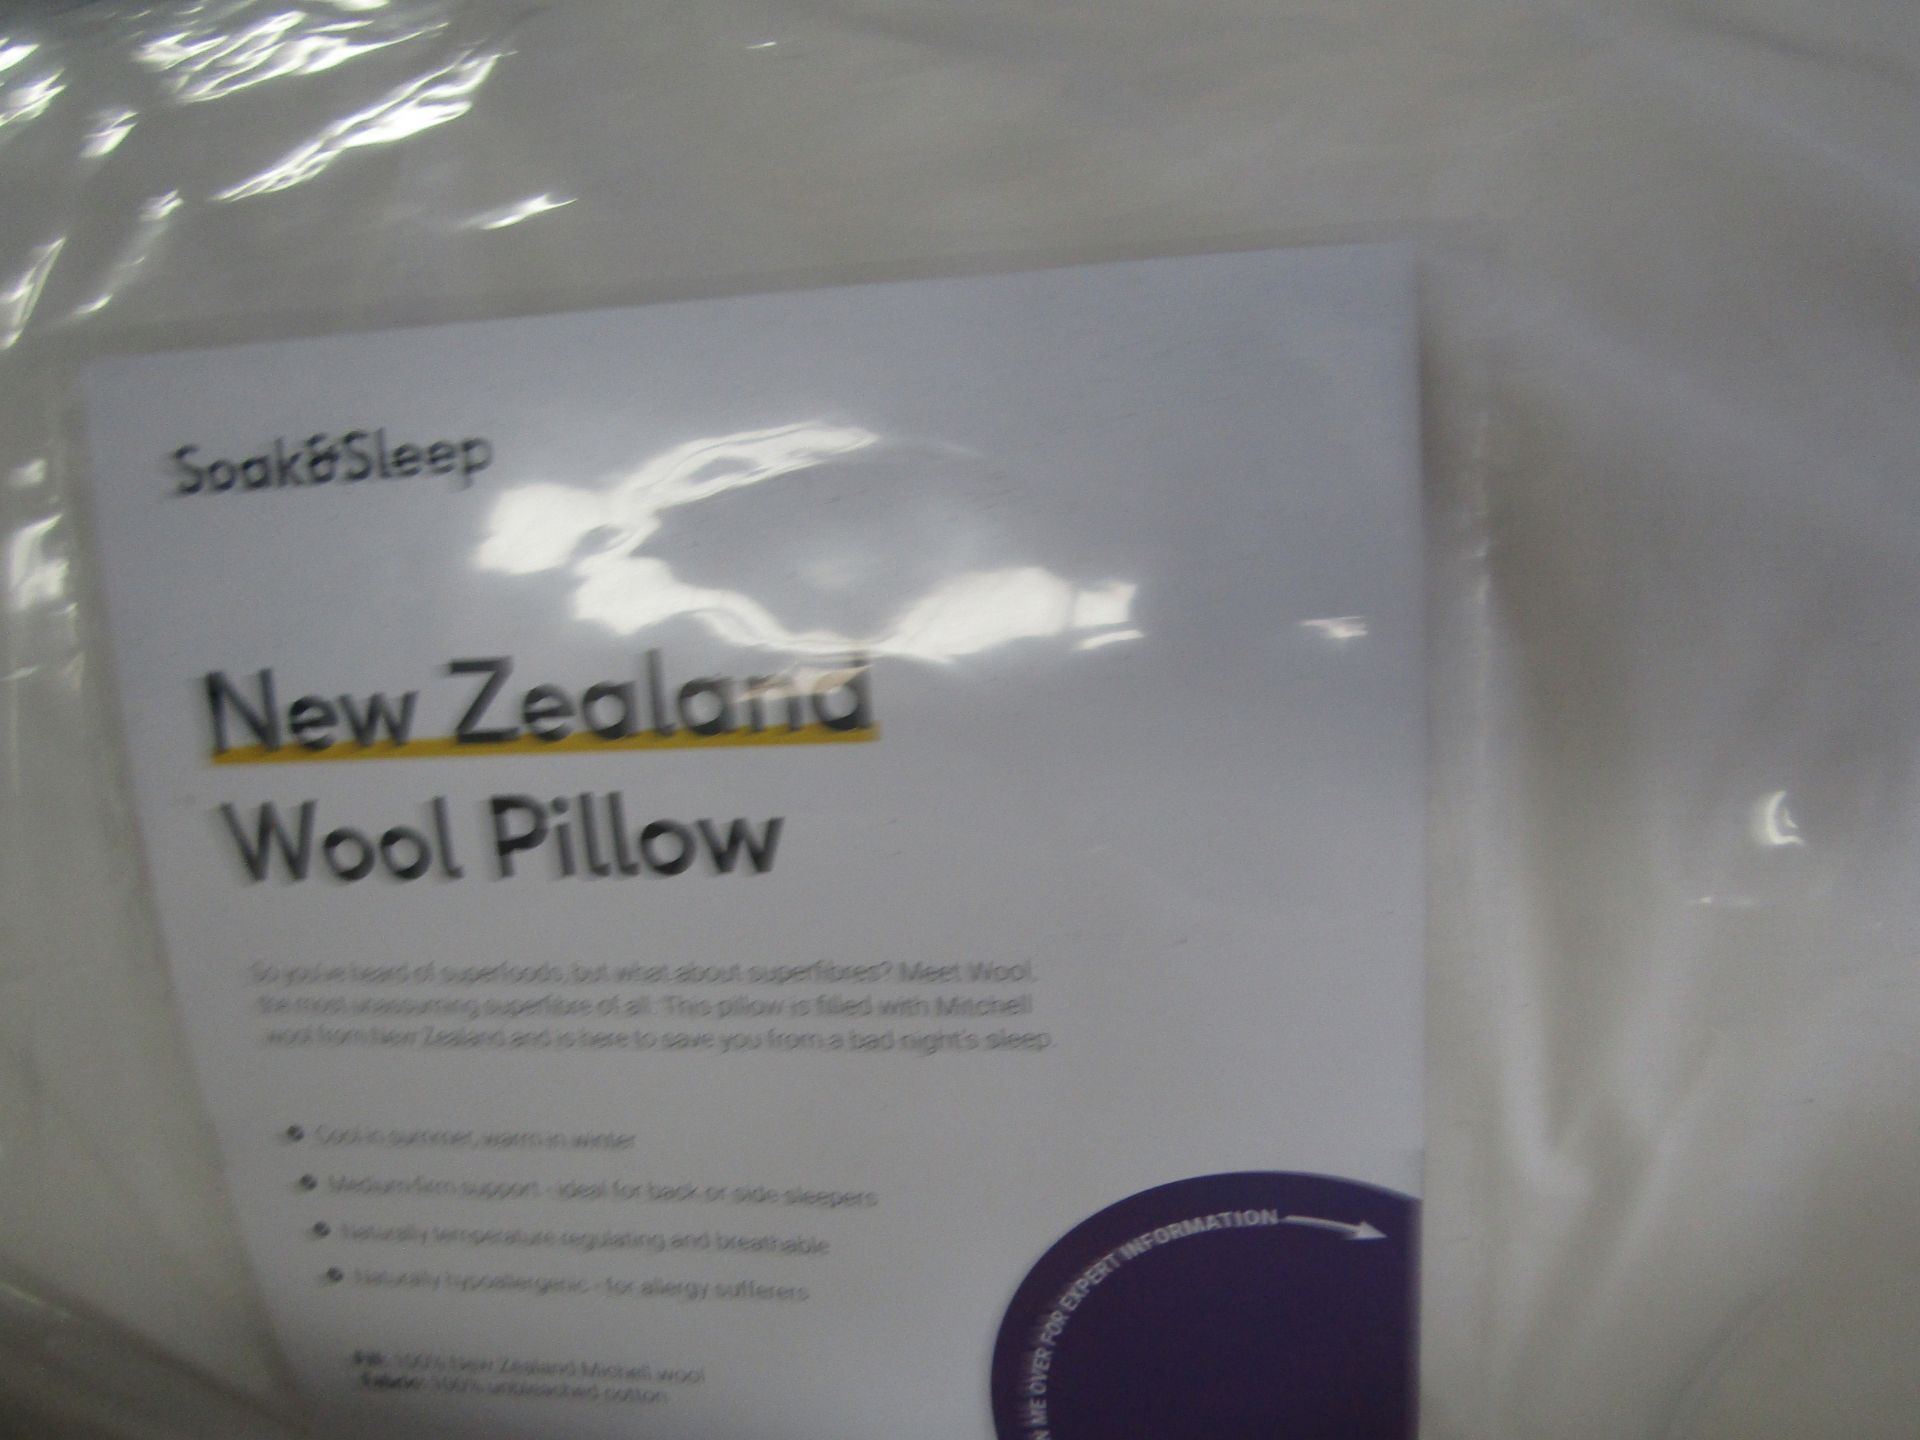 Soak & Sleep Soak & Sleep New Zealand Wool Superking Pillow Pair - Medium/Firm RRP 102About the